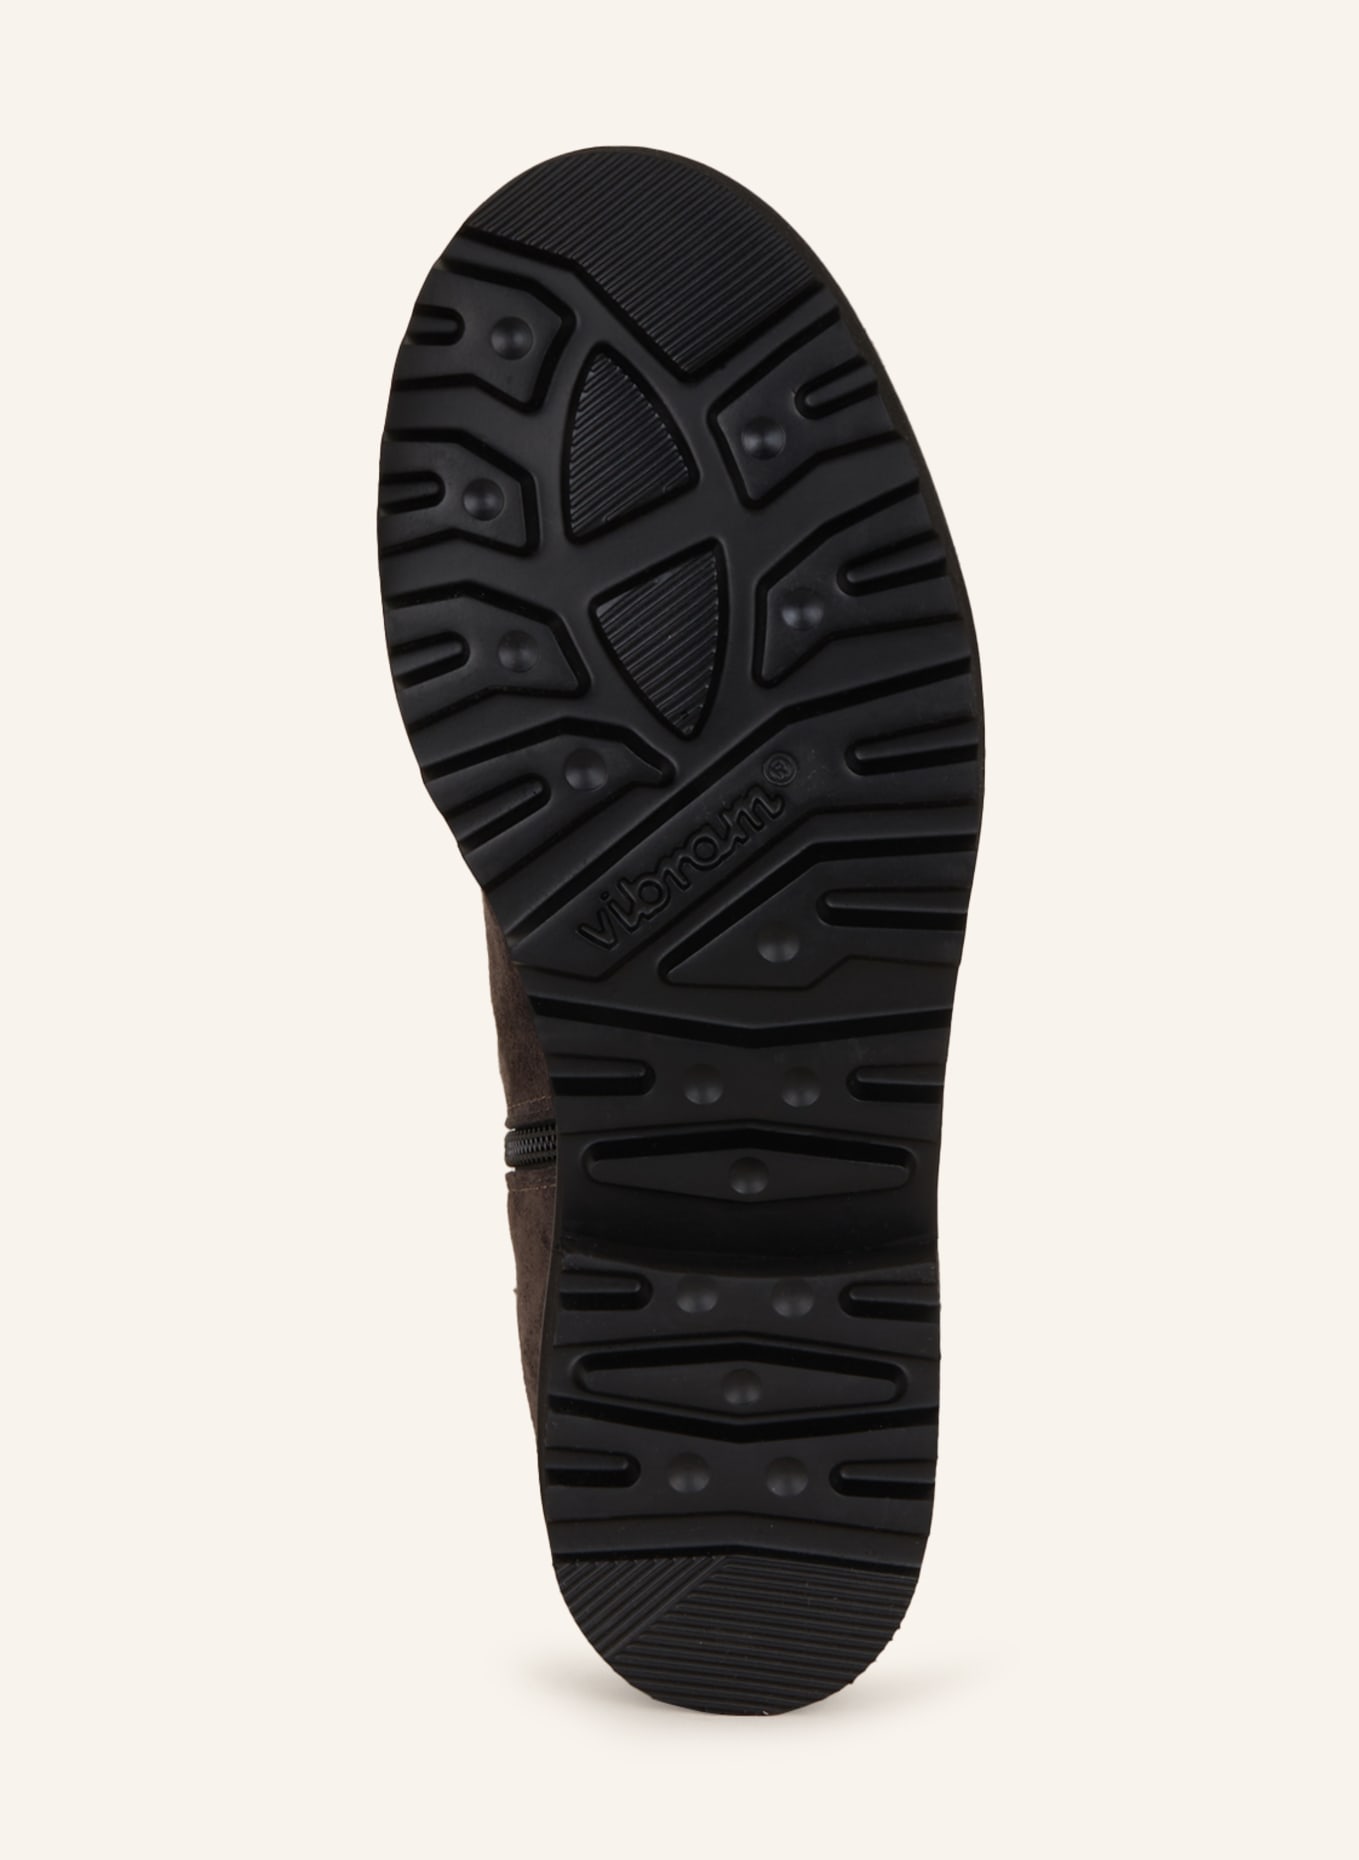 VIAMERCANTI Boots, Color: DARK GRAY (Image 7)